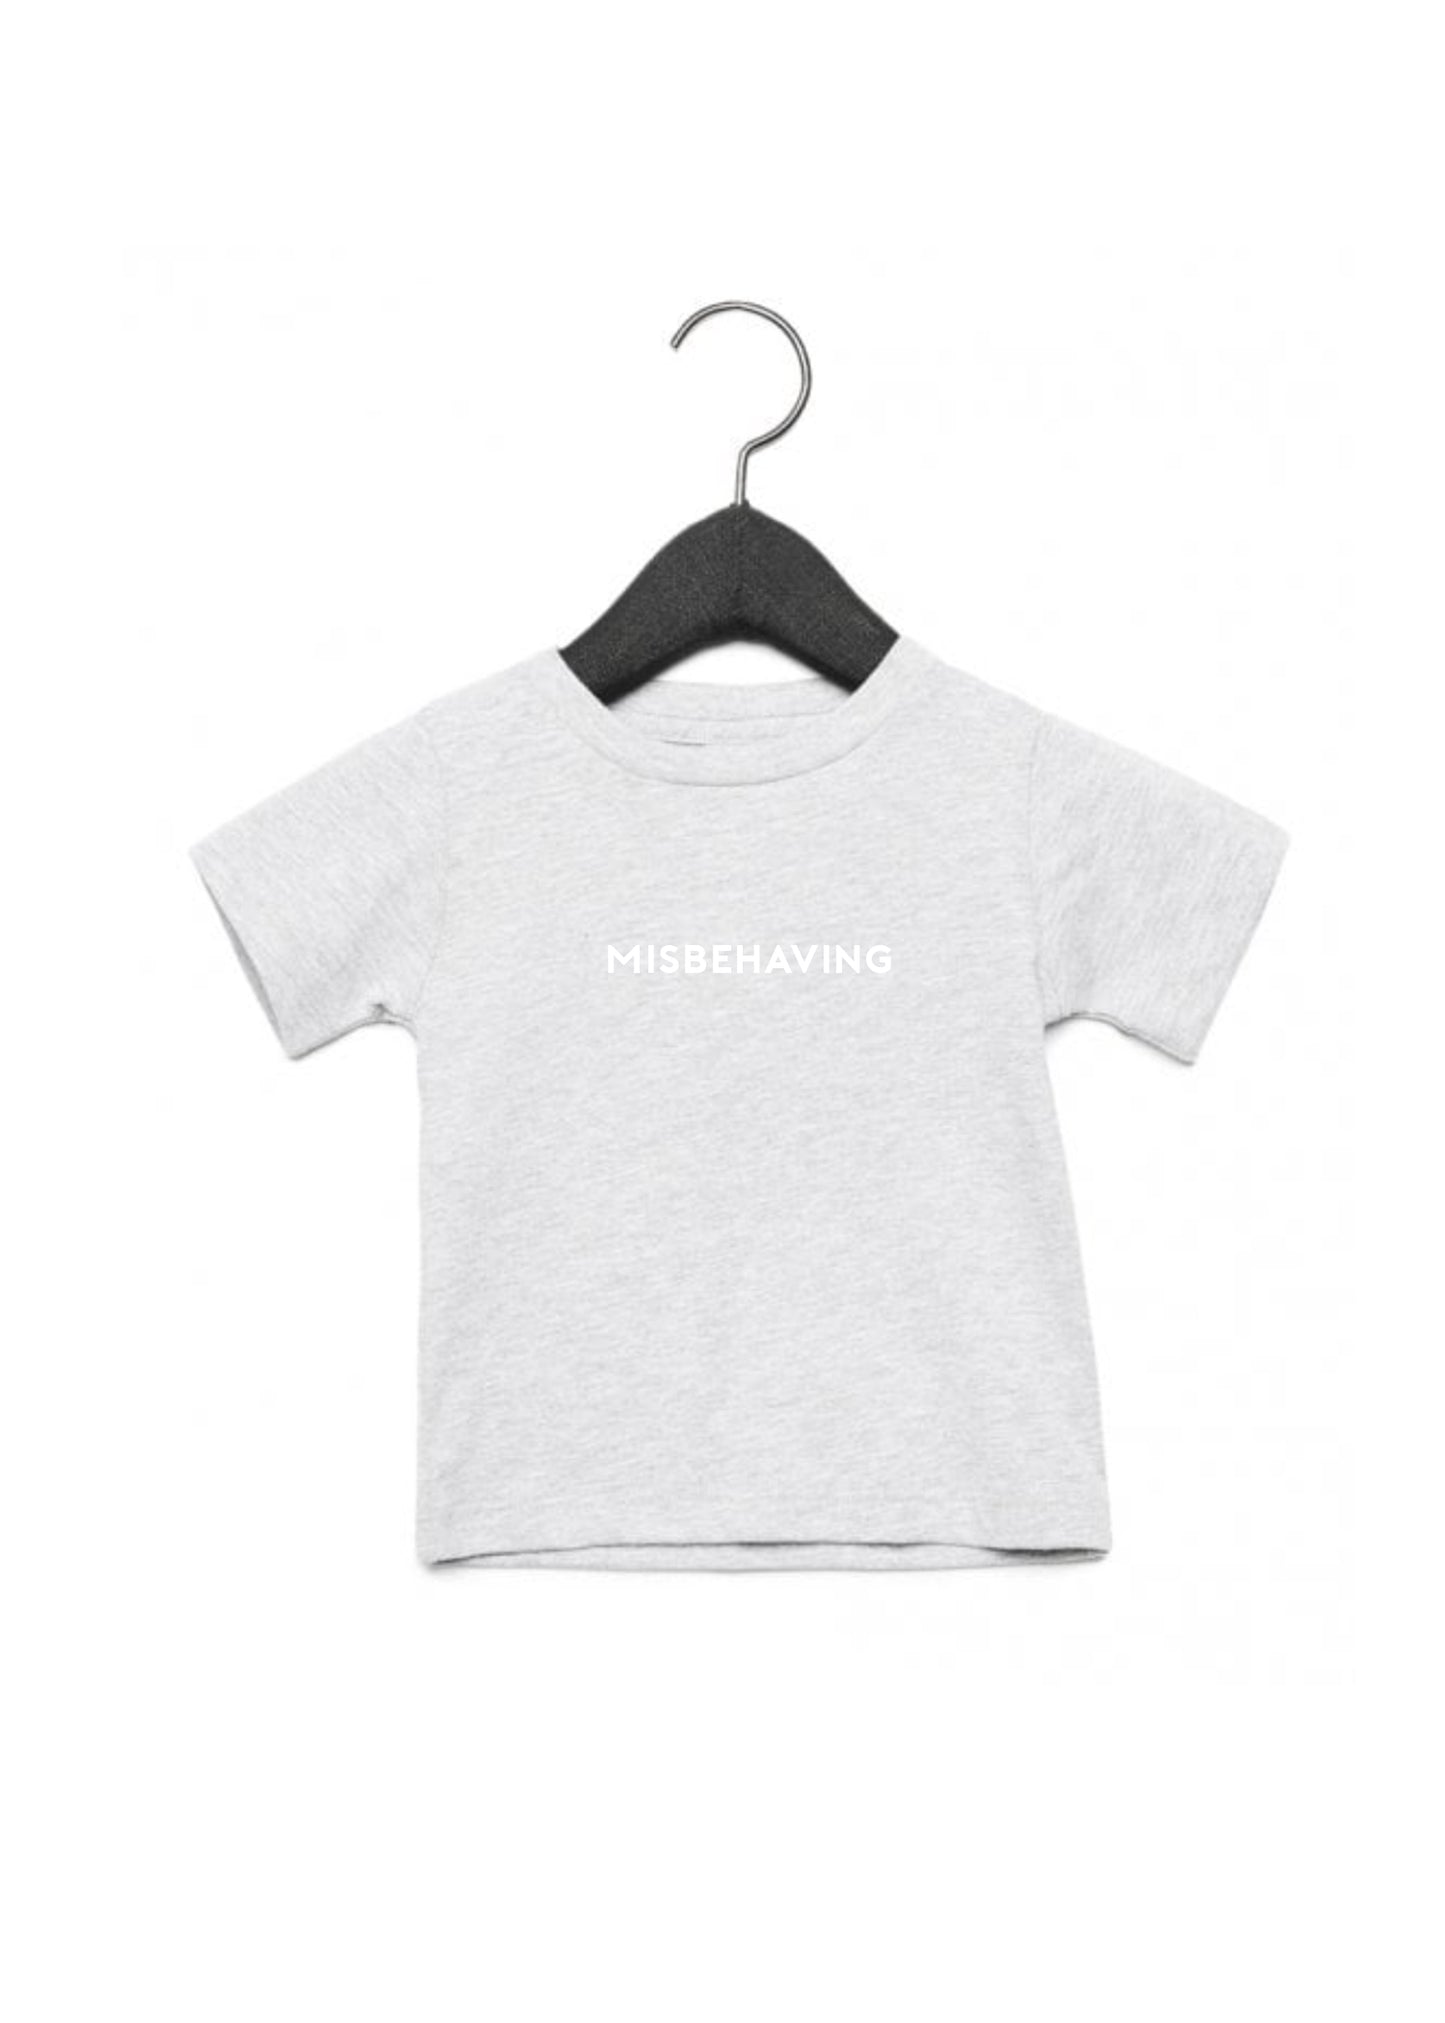 Baby/Kids Misbehaving T-Shirt